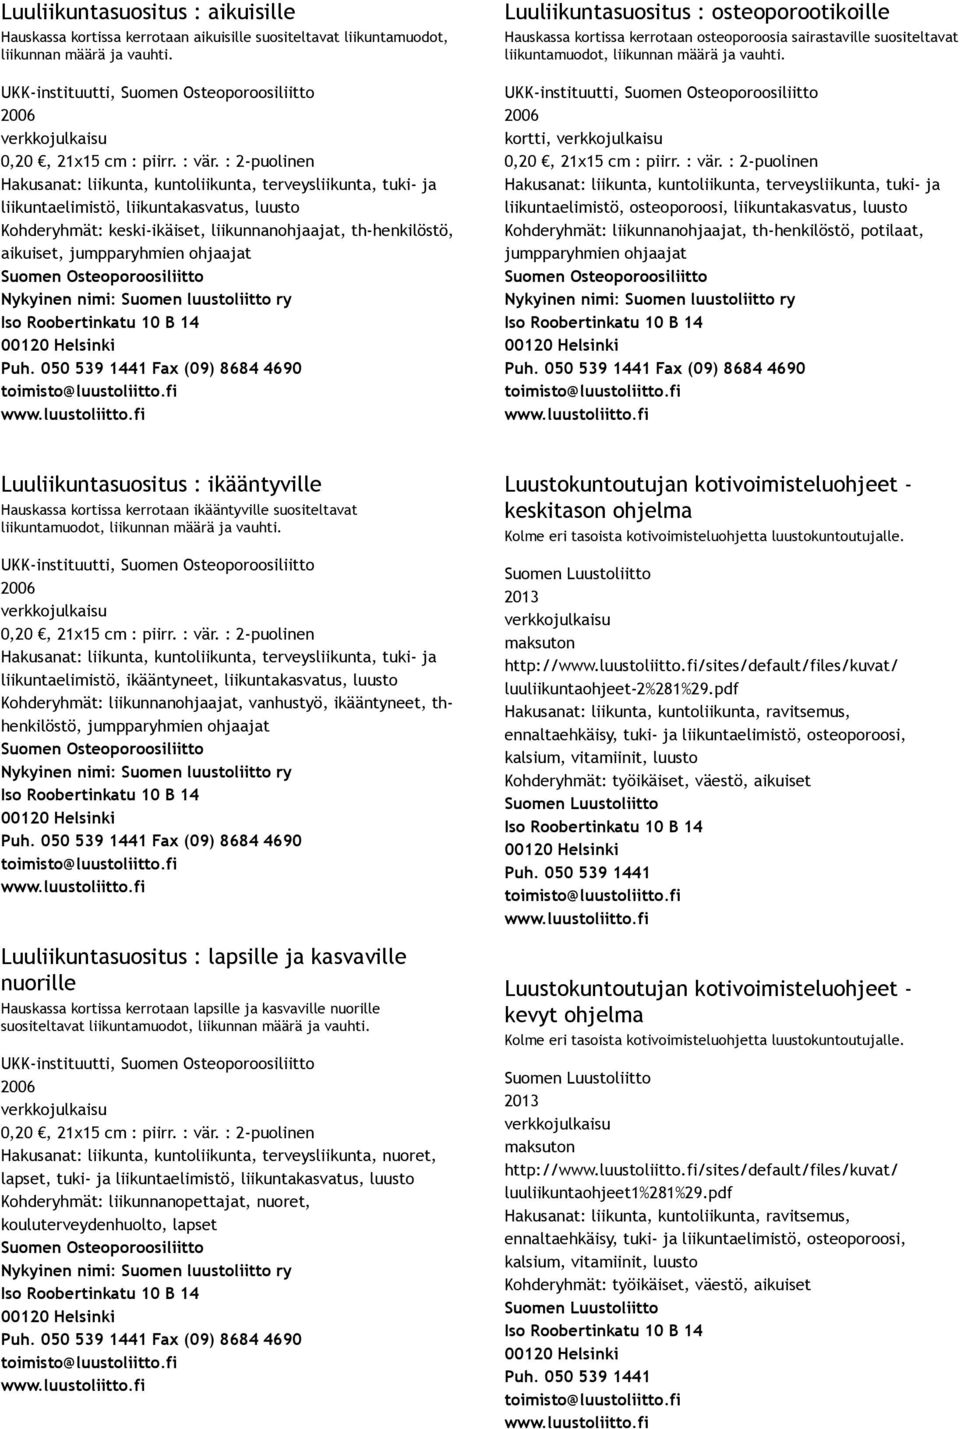 Suomen luustoliitto ry Fax (09) 8684 4690 Luuliikuntasuositus : osteoporootikoille Hauskassa kortissa kerrotaan osteoporoosia sairastaville suositeltavat liikuntamuodot, liikunnan määrä ja vauhti.